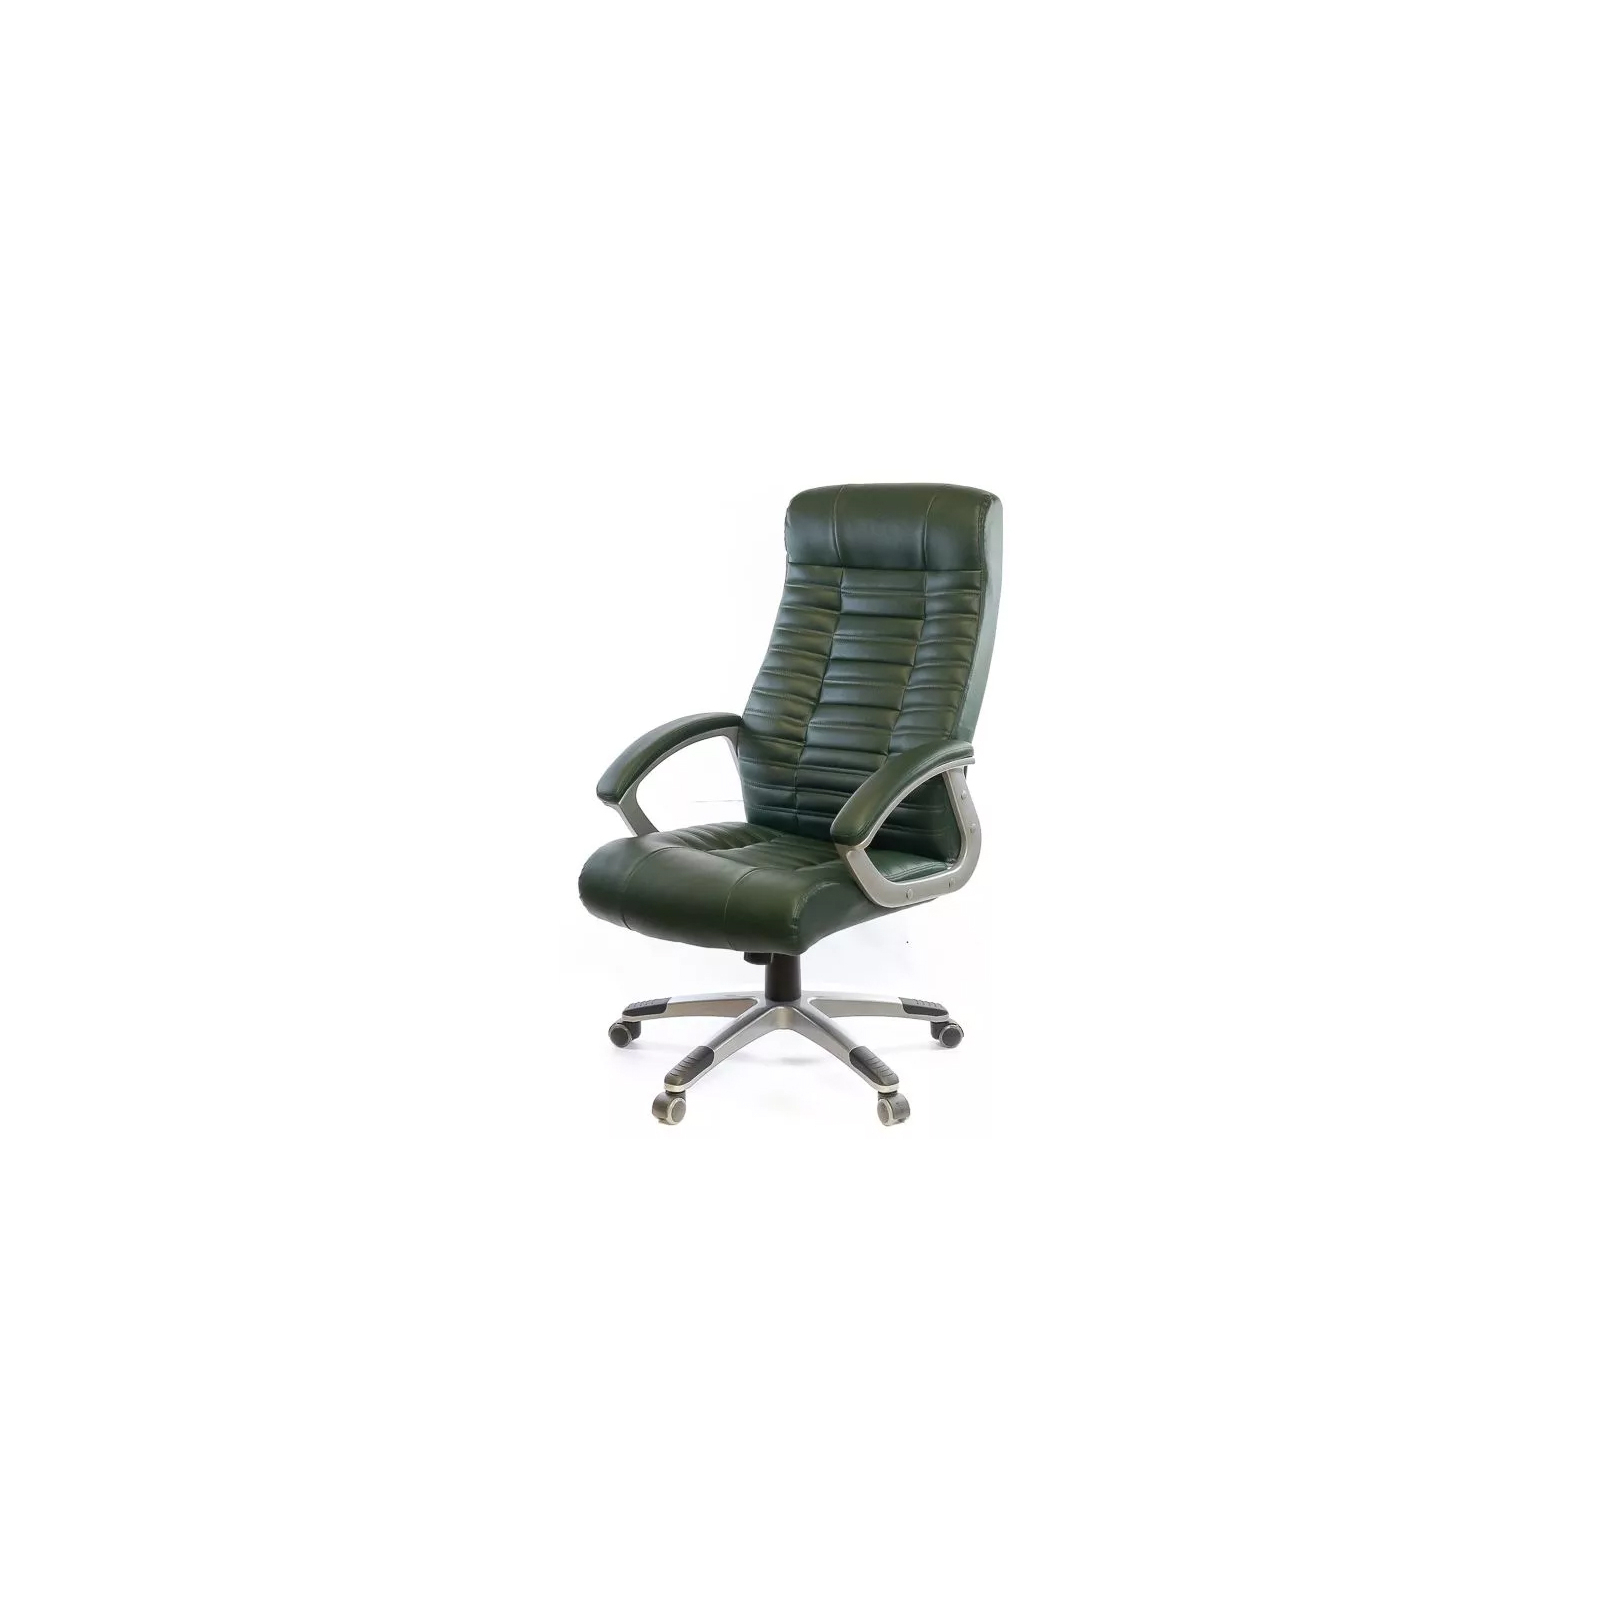 Офисное кресло Аклас Атлант NEW PL TILT Зеленое (13271)